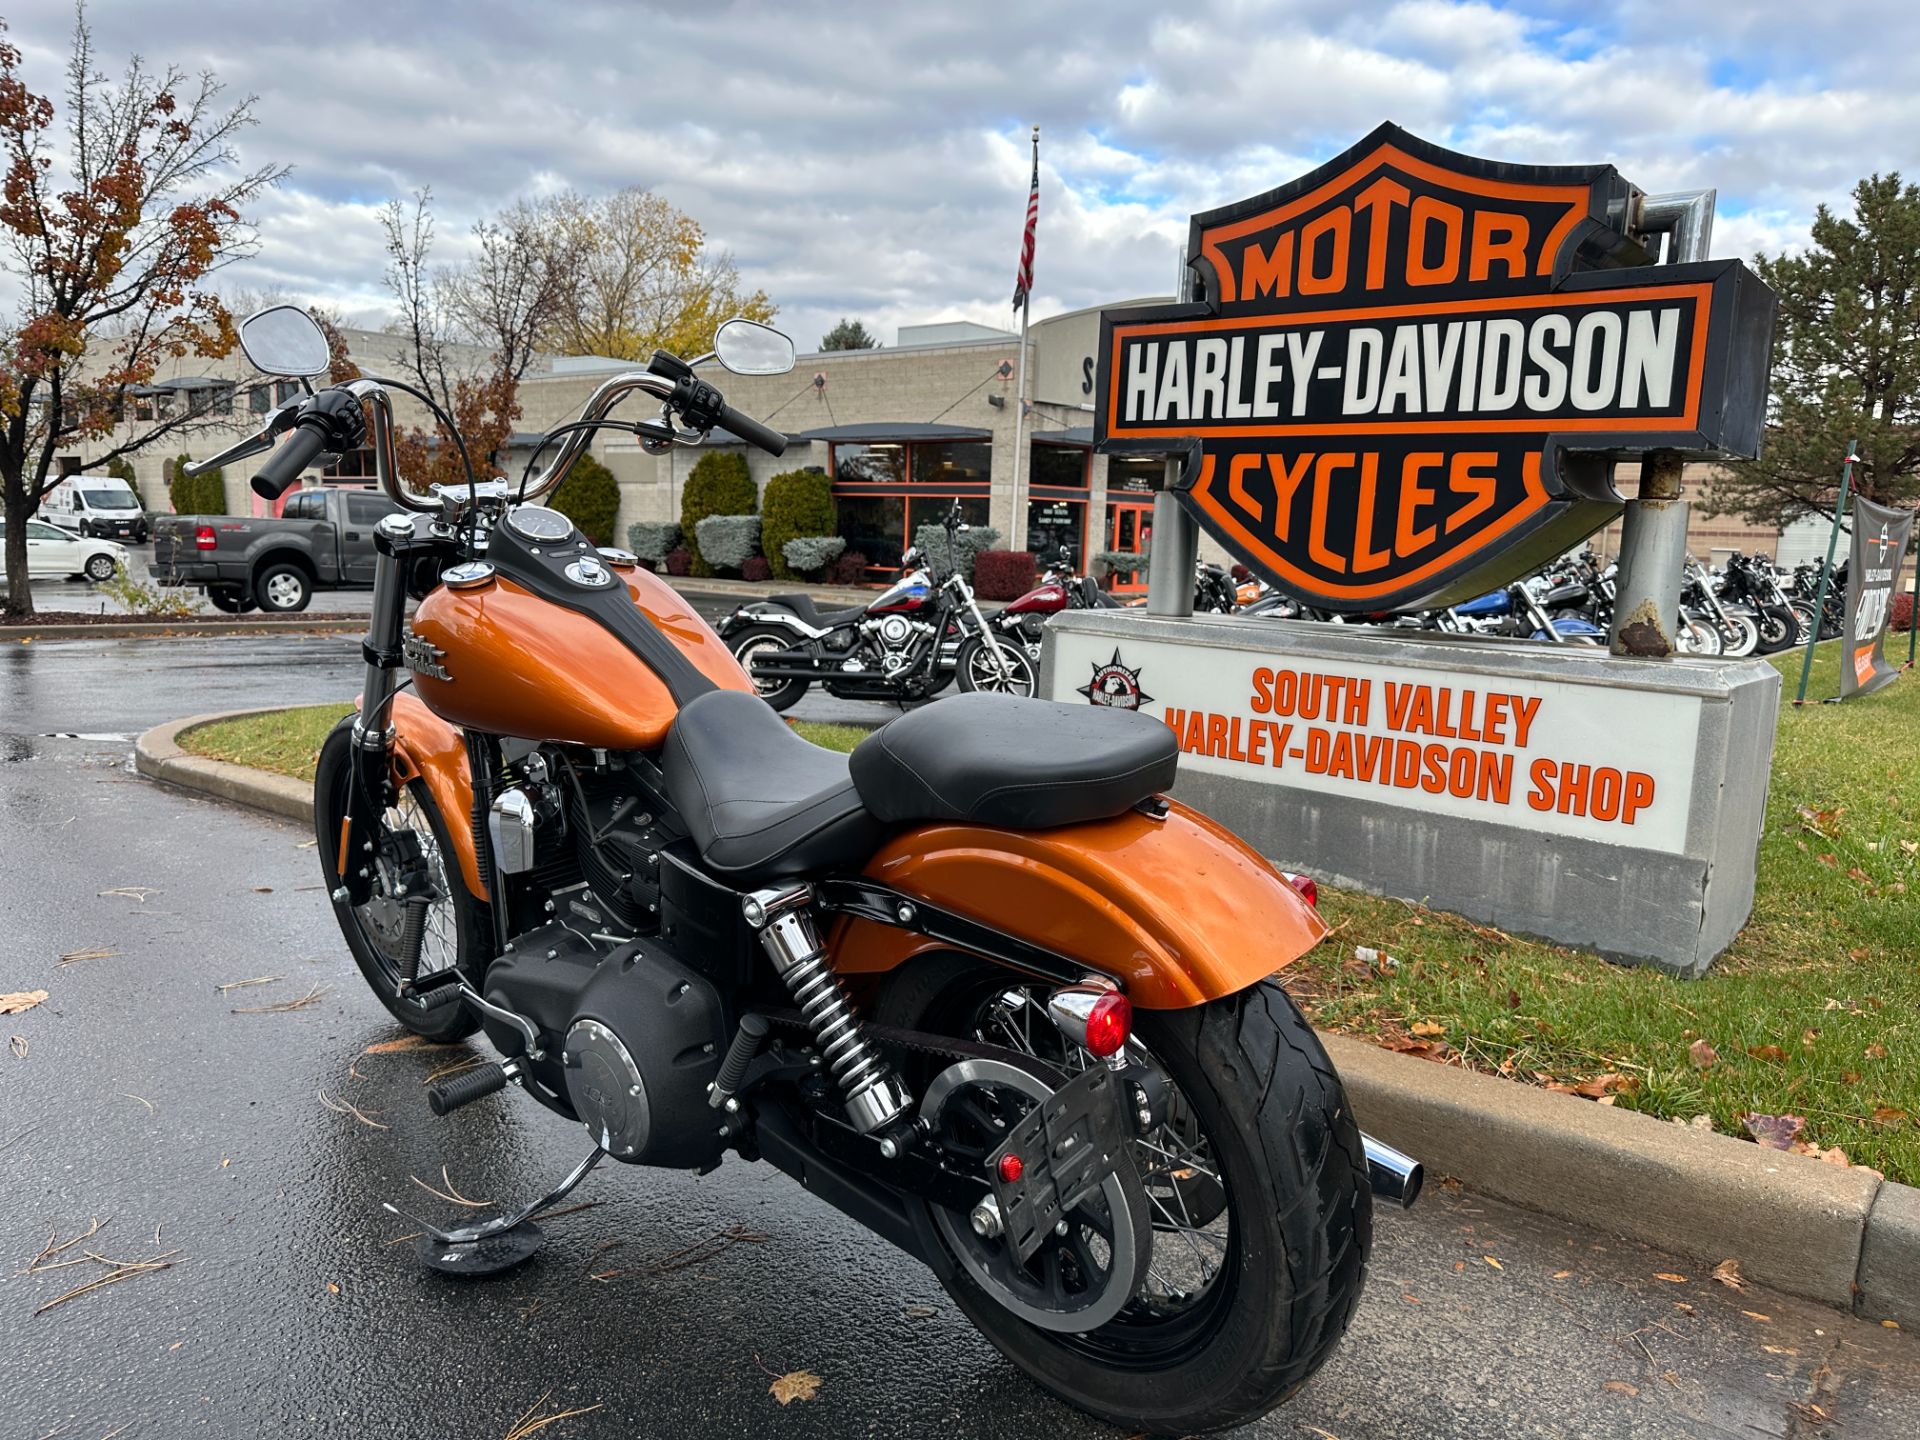 2015 Harley-Davidson Street Bob® in Sandy, Utah - Photo 14